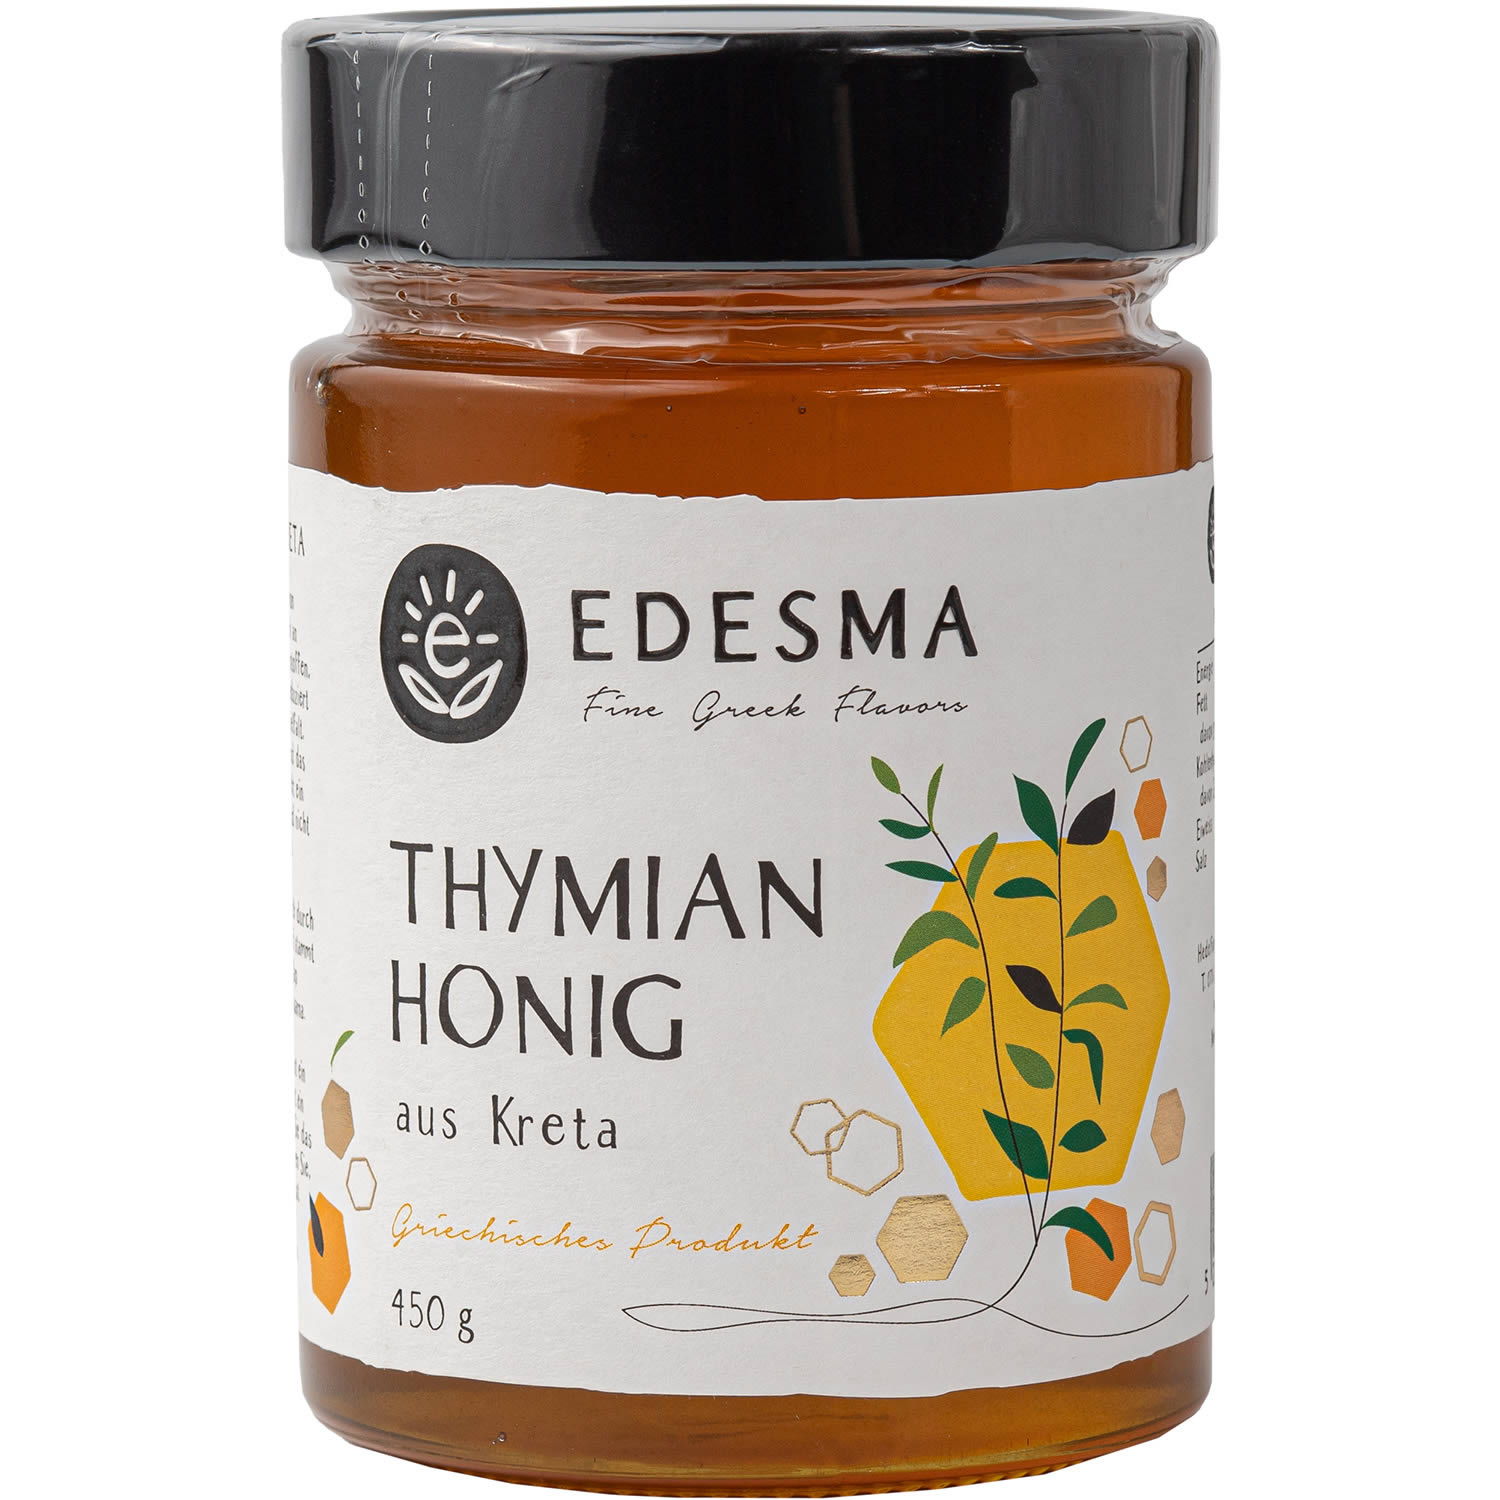 EDESMA Thymian Honig 450 g